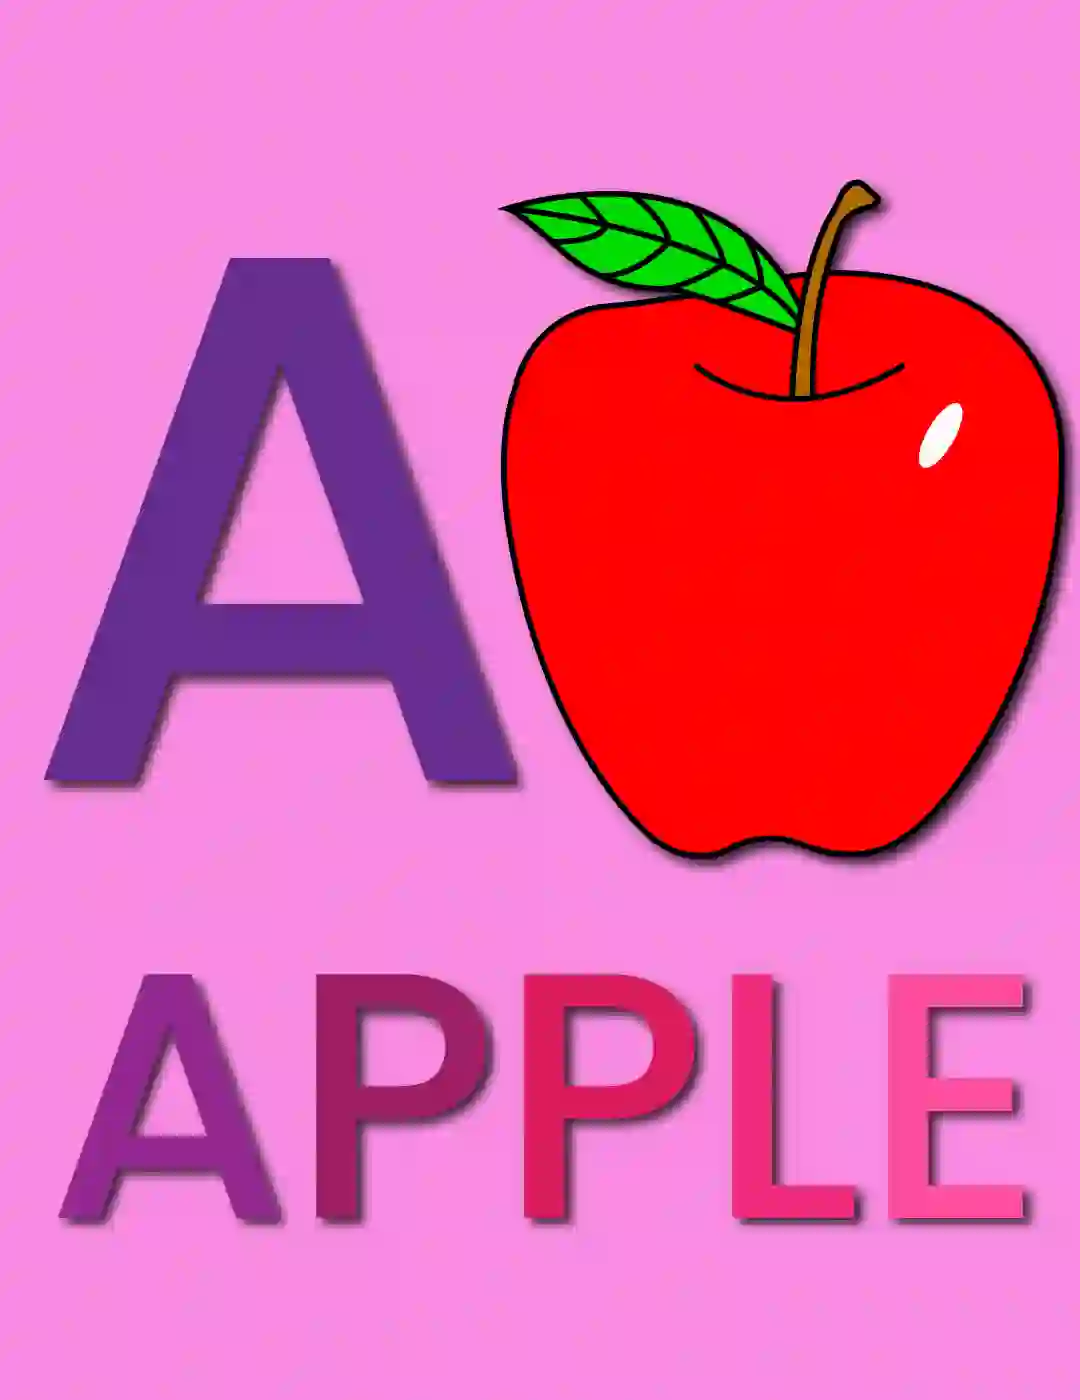 How to Draw An Apple for Kids | बच्चों के लिए सेब का चित्र कैसे बनाएं?